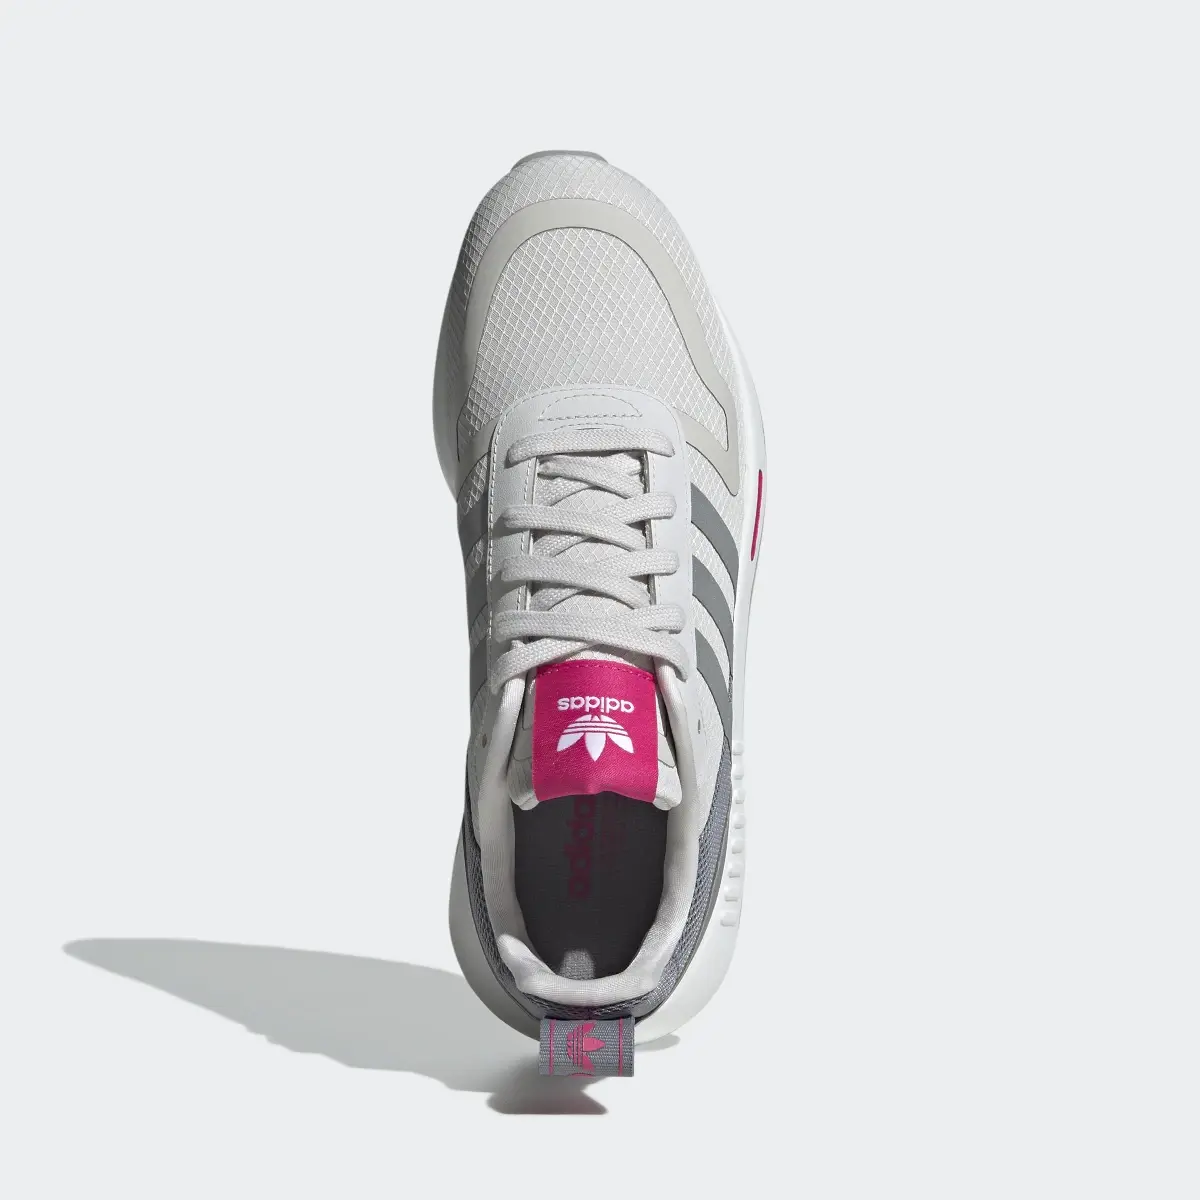 Adidas Multix 2.0 Shoes. 3